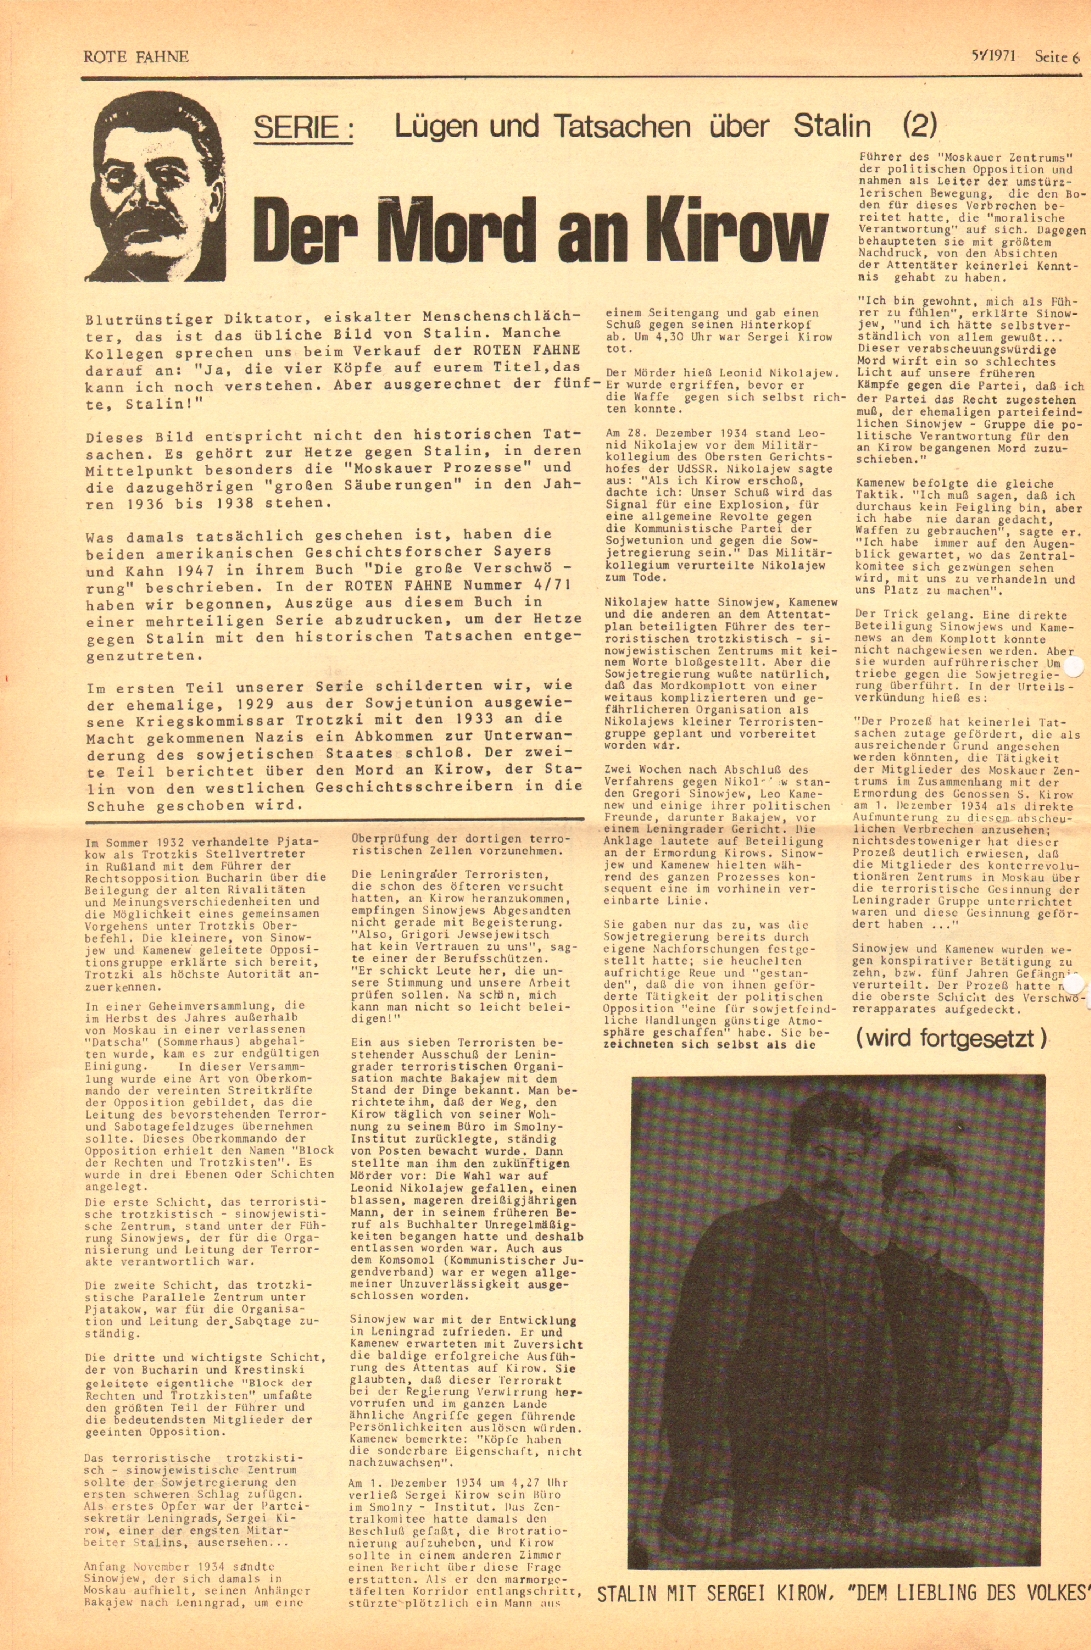 Rote Fahne, 2. Jg., 15.3.1971, Nr. 5, Seite 6